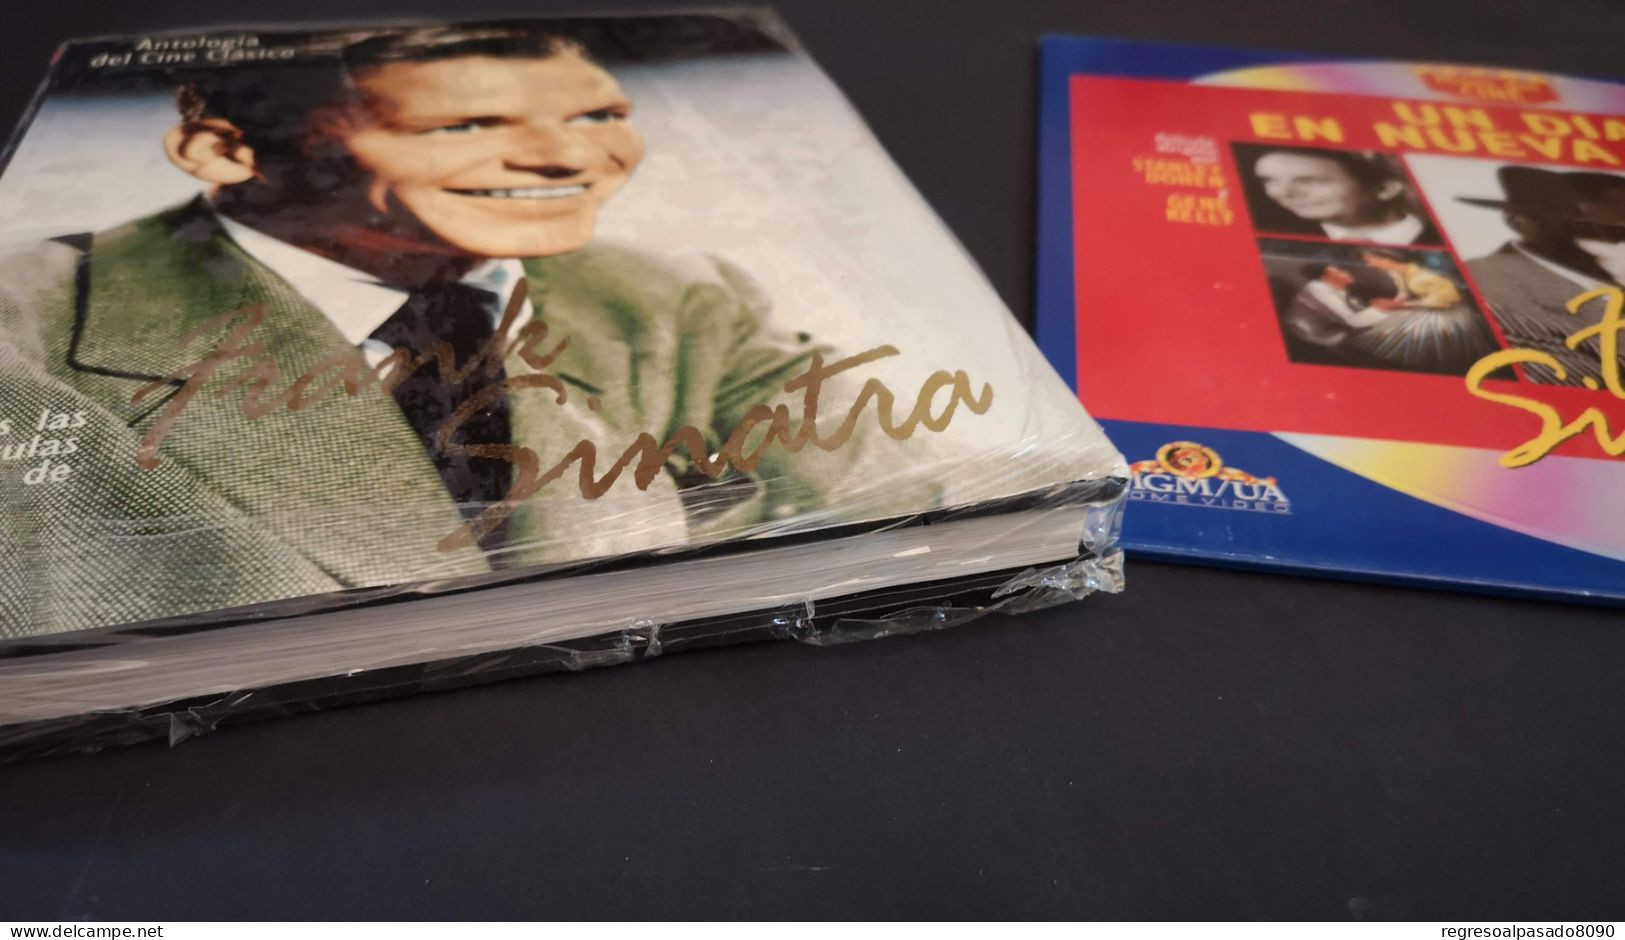 Frank Sinatra Libro Y Película Laser Disc Laserdisc Un Dia En Nueva York. Mitos Del Cine Planeta Años 90 - Classiques